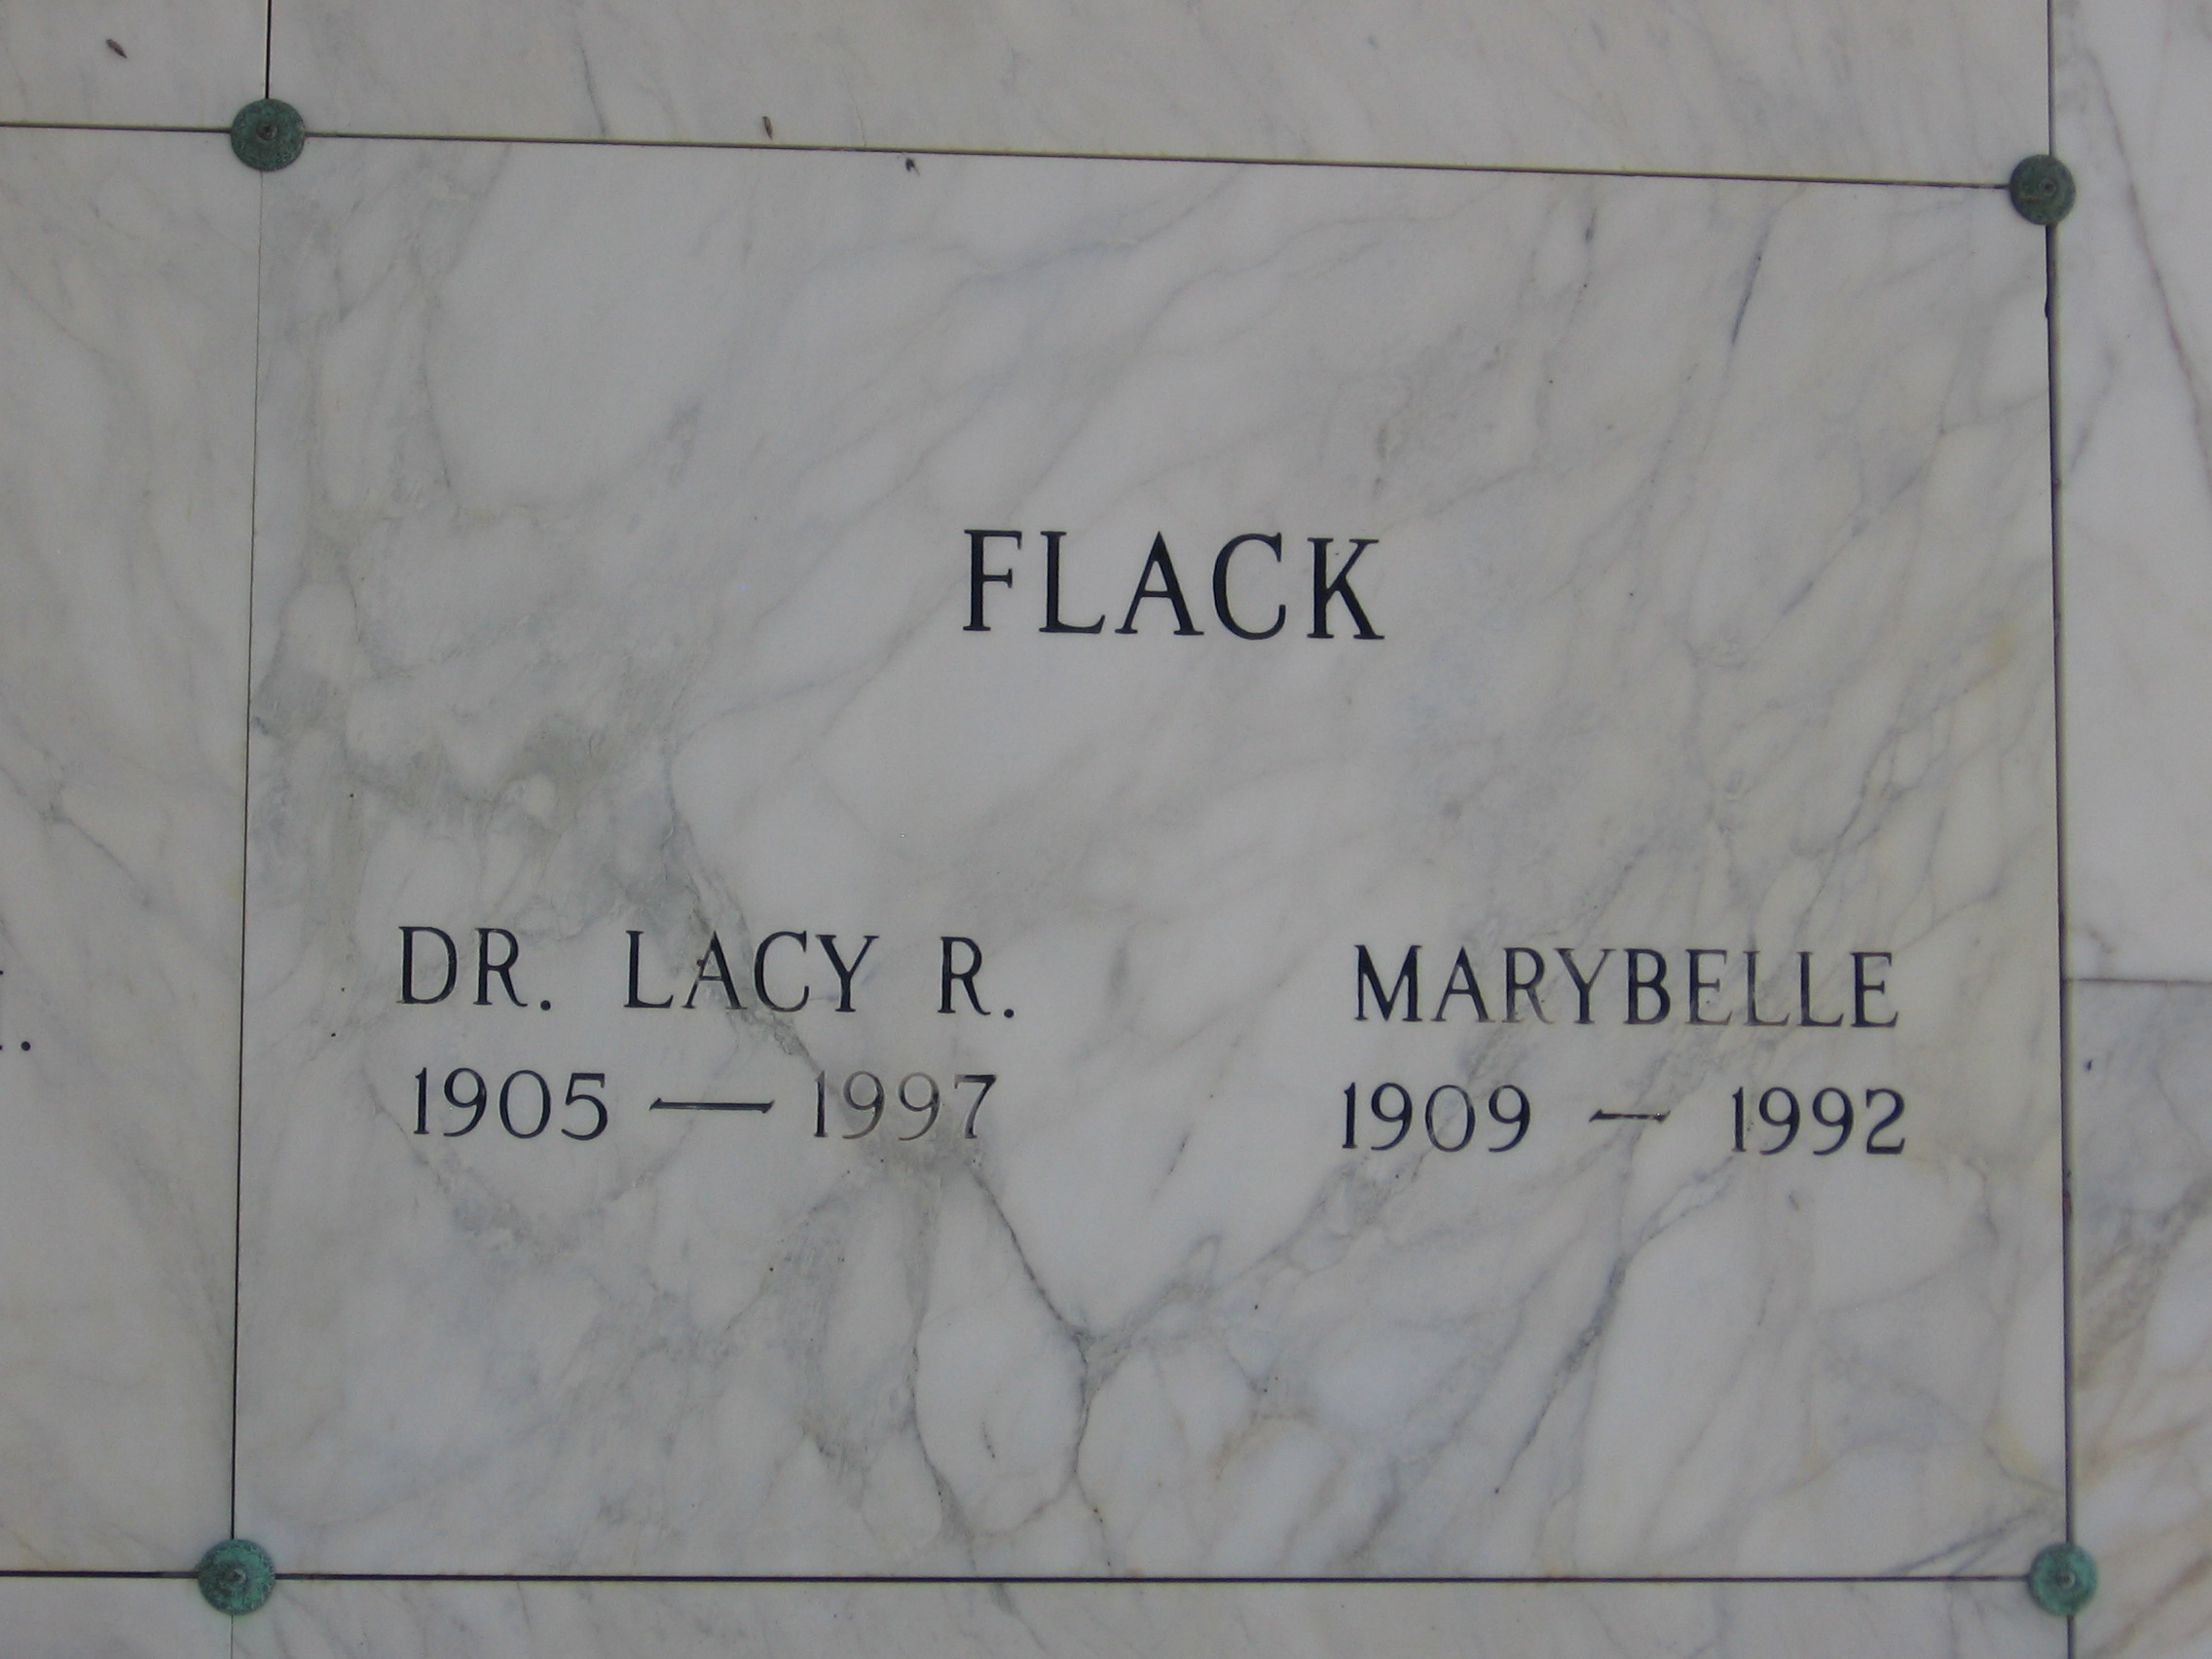 Dr Lacy R Flack